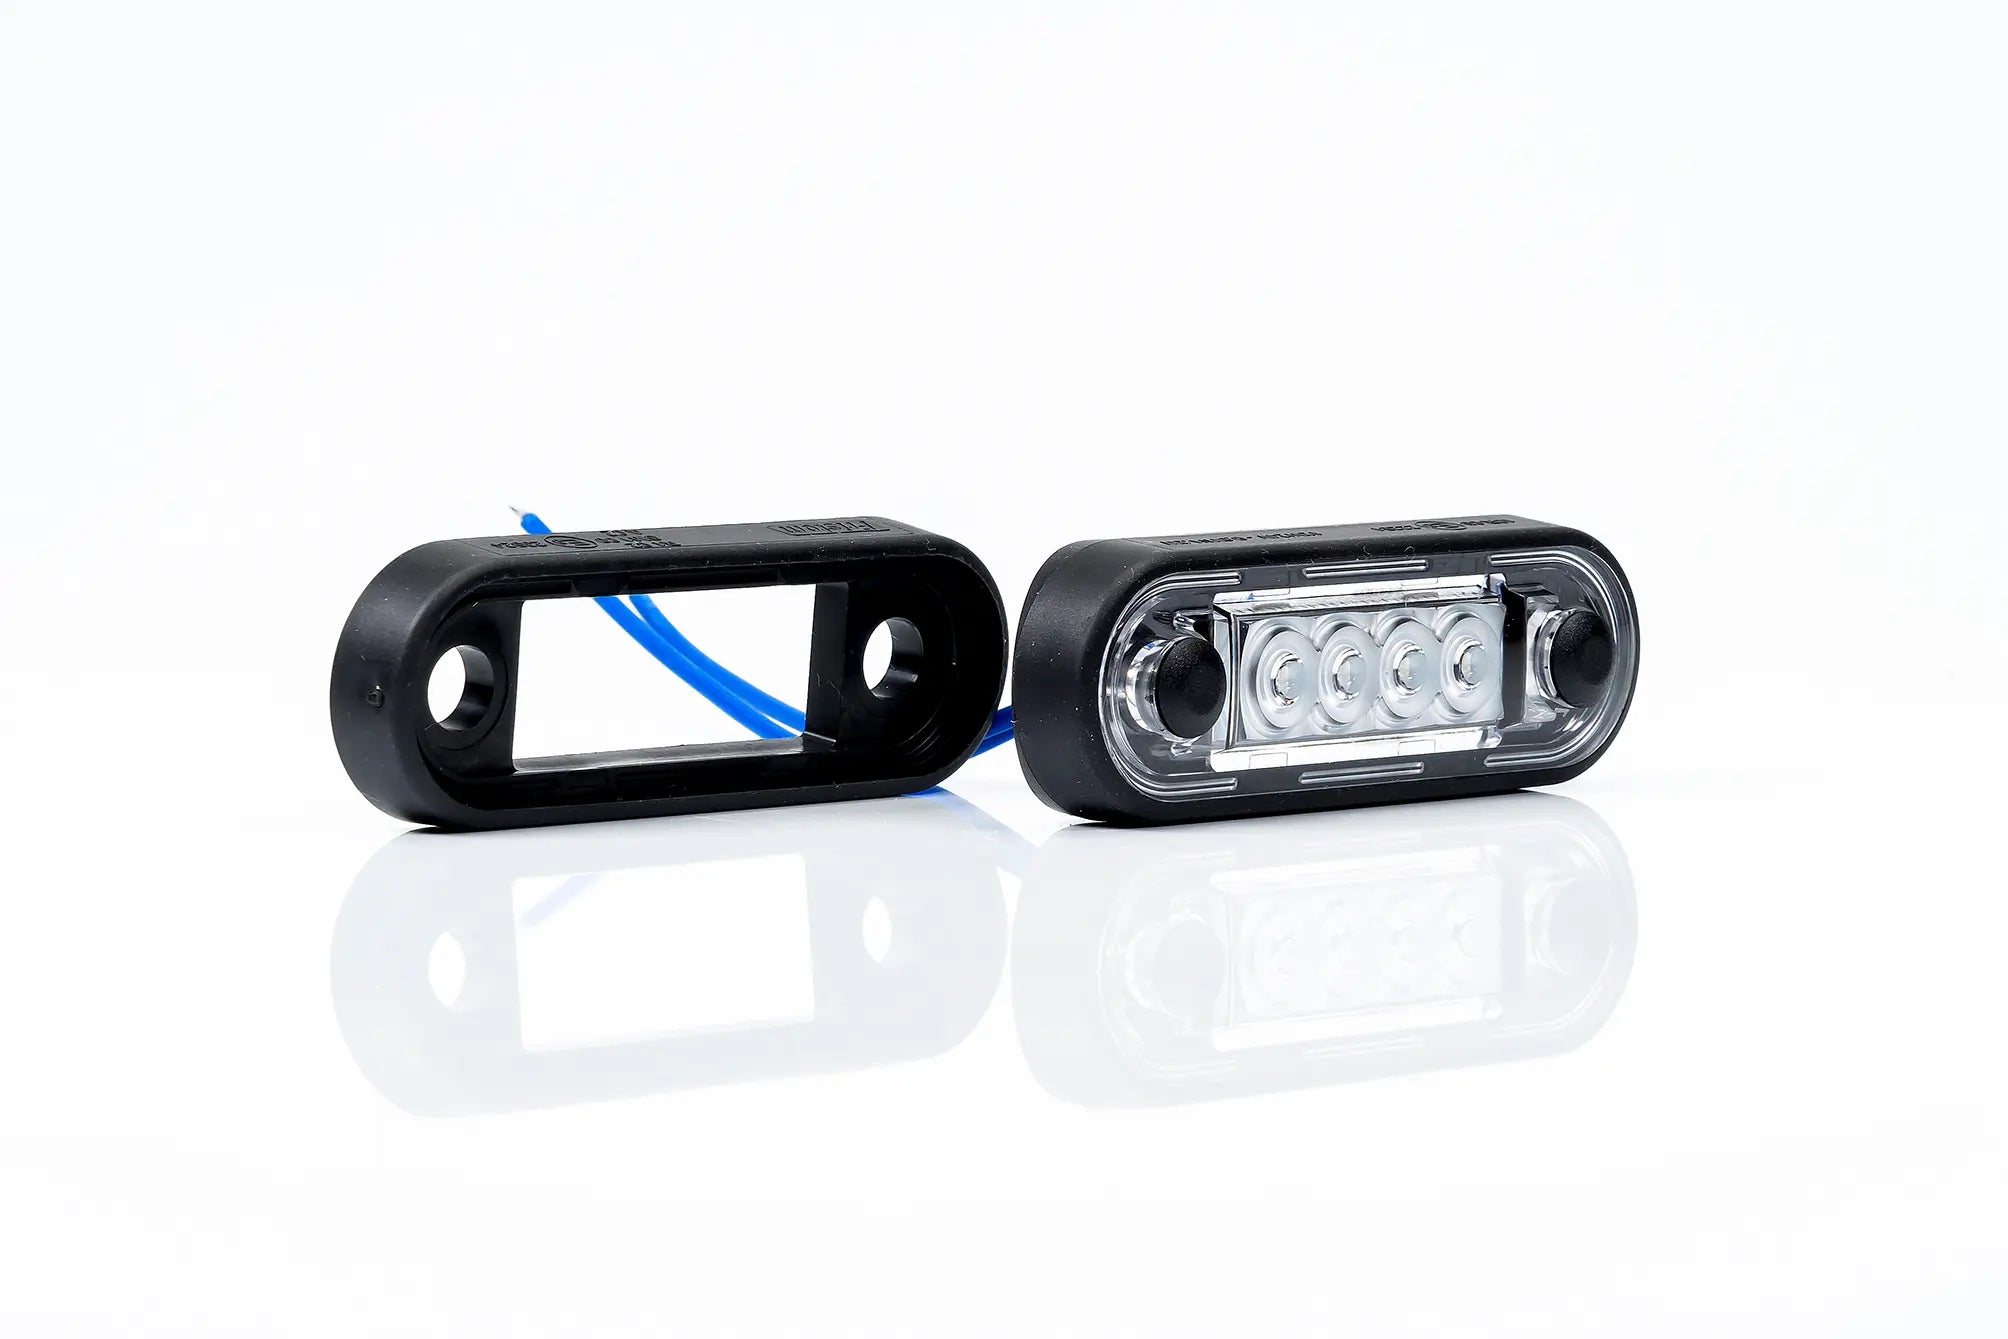 Premium LED-markeringslicht voor Truck Bars & Bull Bars - spo-cs-disabled - spo-default - spo-disabled - spo-notify-me-disa